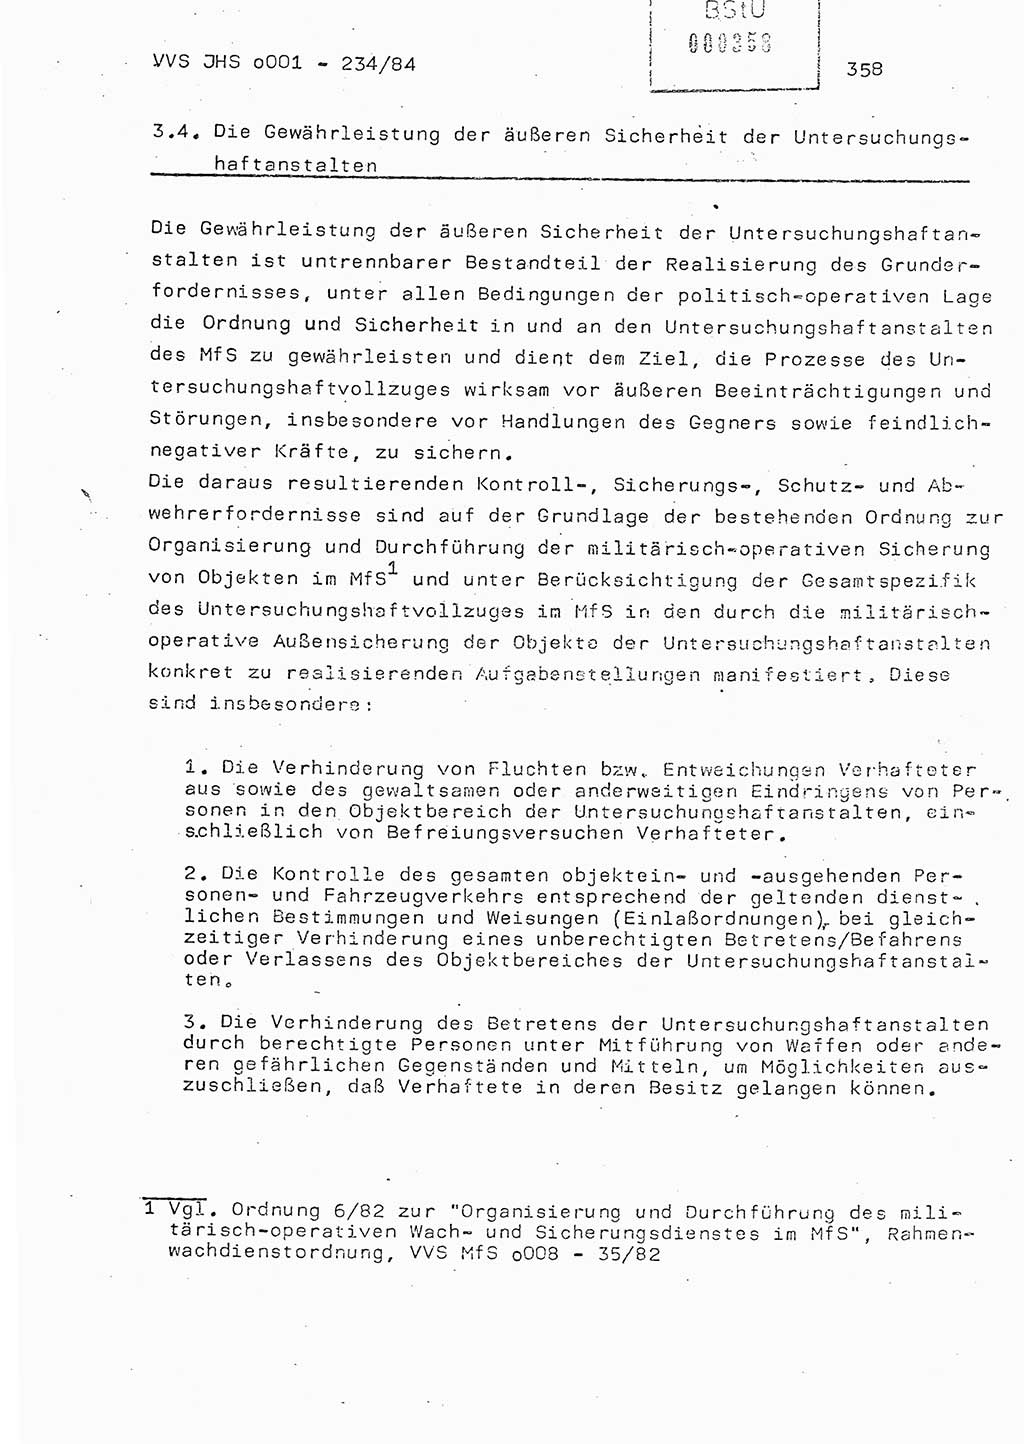 Dissertation Oberst Siegfried Rataizick (Abt. ⅩⅣ), Oberstleutnant Volkmar Heinz (Abt. ⅩⅣ), Oberstleutnant Werner Stein (HA Ⅸ), Hauptmann Heinz Conrad (JHS), Ministerium für Staatssicherheit (MfS) [Deutsche Demokratische Republik (DDR)], Juristische Hochschule (JHS), Vertrauliche Verschlußsache (VVS) o001-234/84, Potsdam 1984, Seite 358 (Diss. MfS DDR JHS VVS o001-234/84 1984, S. 358)